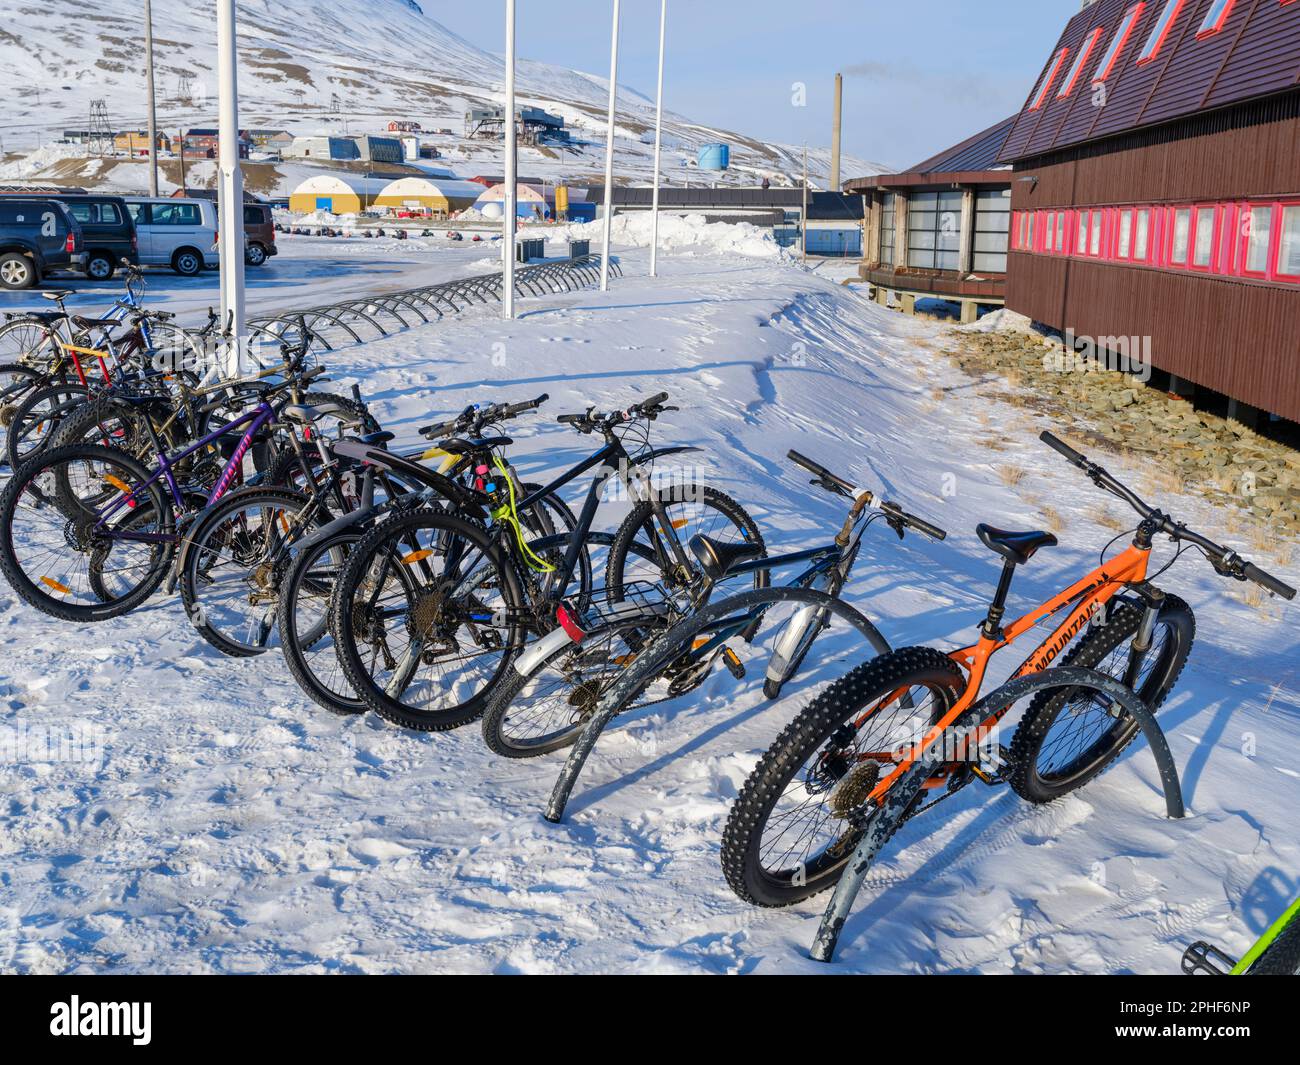 Fahrraeder vor dem Museum und Forschungszentrum. Longyearbyen, die Hauptstadt von Svalbard auf der Insel Spitzbergen im Spitzbergen Archipel. Arktis, Stock Photo